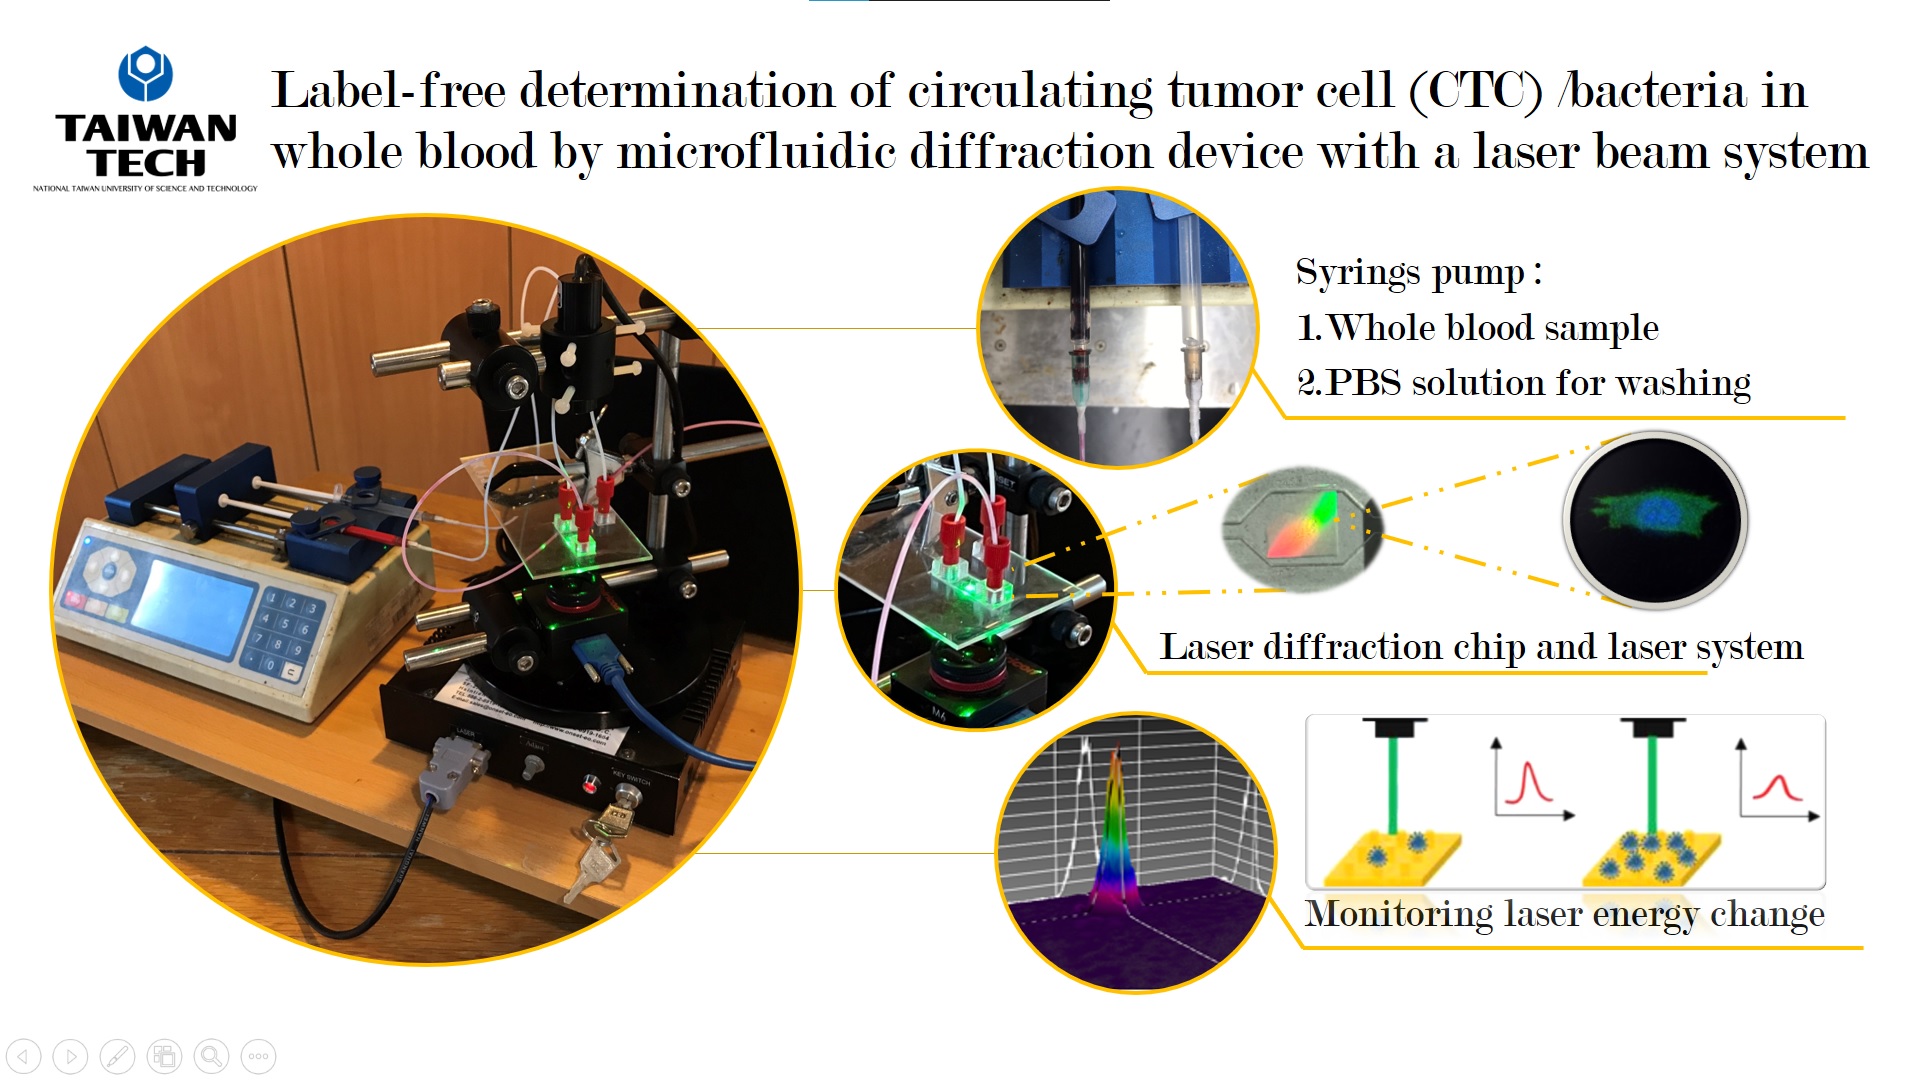 微流道繞射晶片搭配雷射系統高速準確計數全血中循環腫瘤細胞/細菌